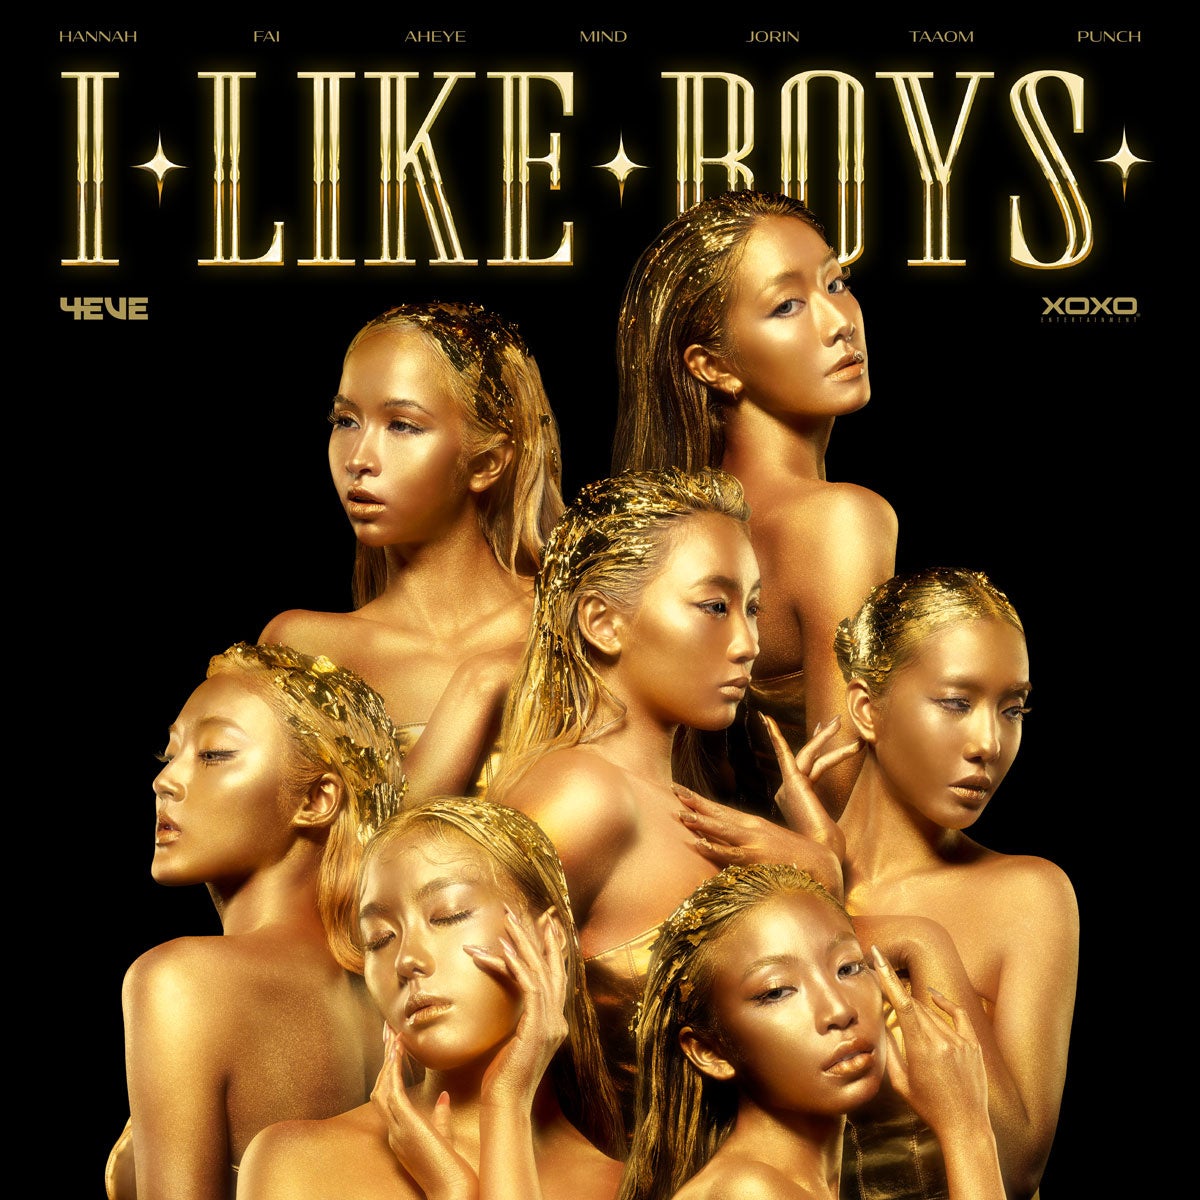 タイの人気ガールズグループ「4EVE」が新曲「I Like Boys」を日本リリース開始のサブ画像1